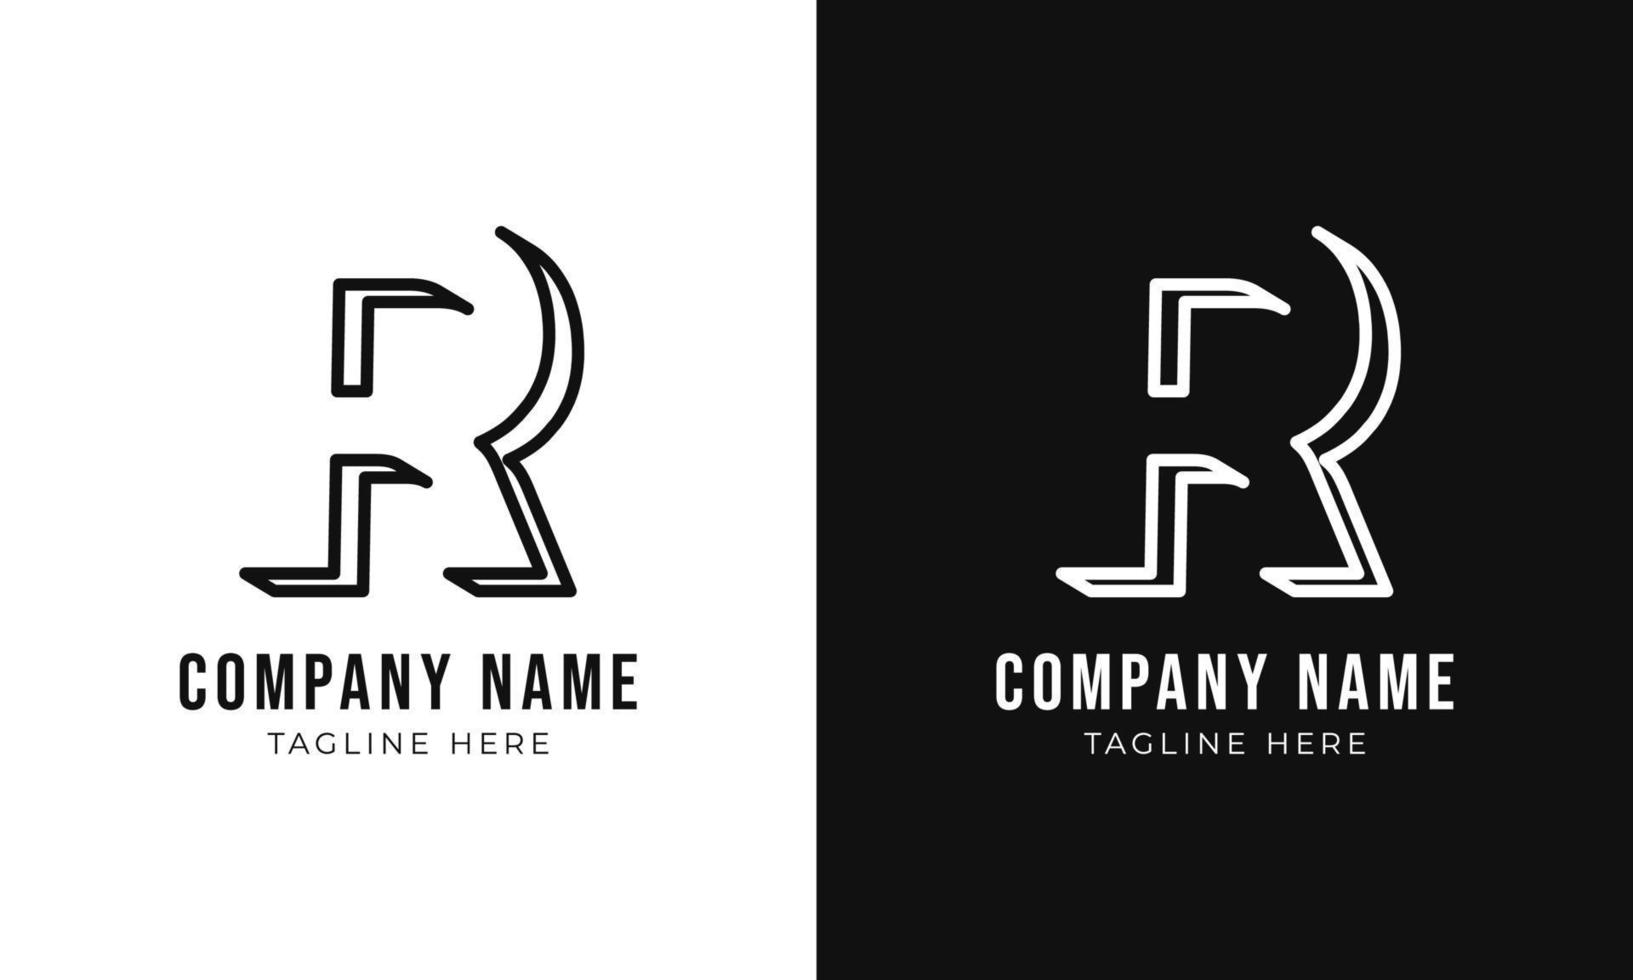 plantilla de diseño de logotipo de monograma de letra inicial r. contorno creativo r tipografía y colores negros. vector